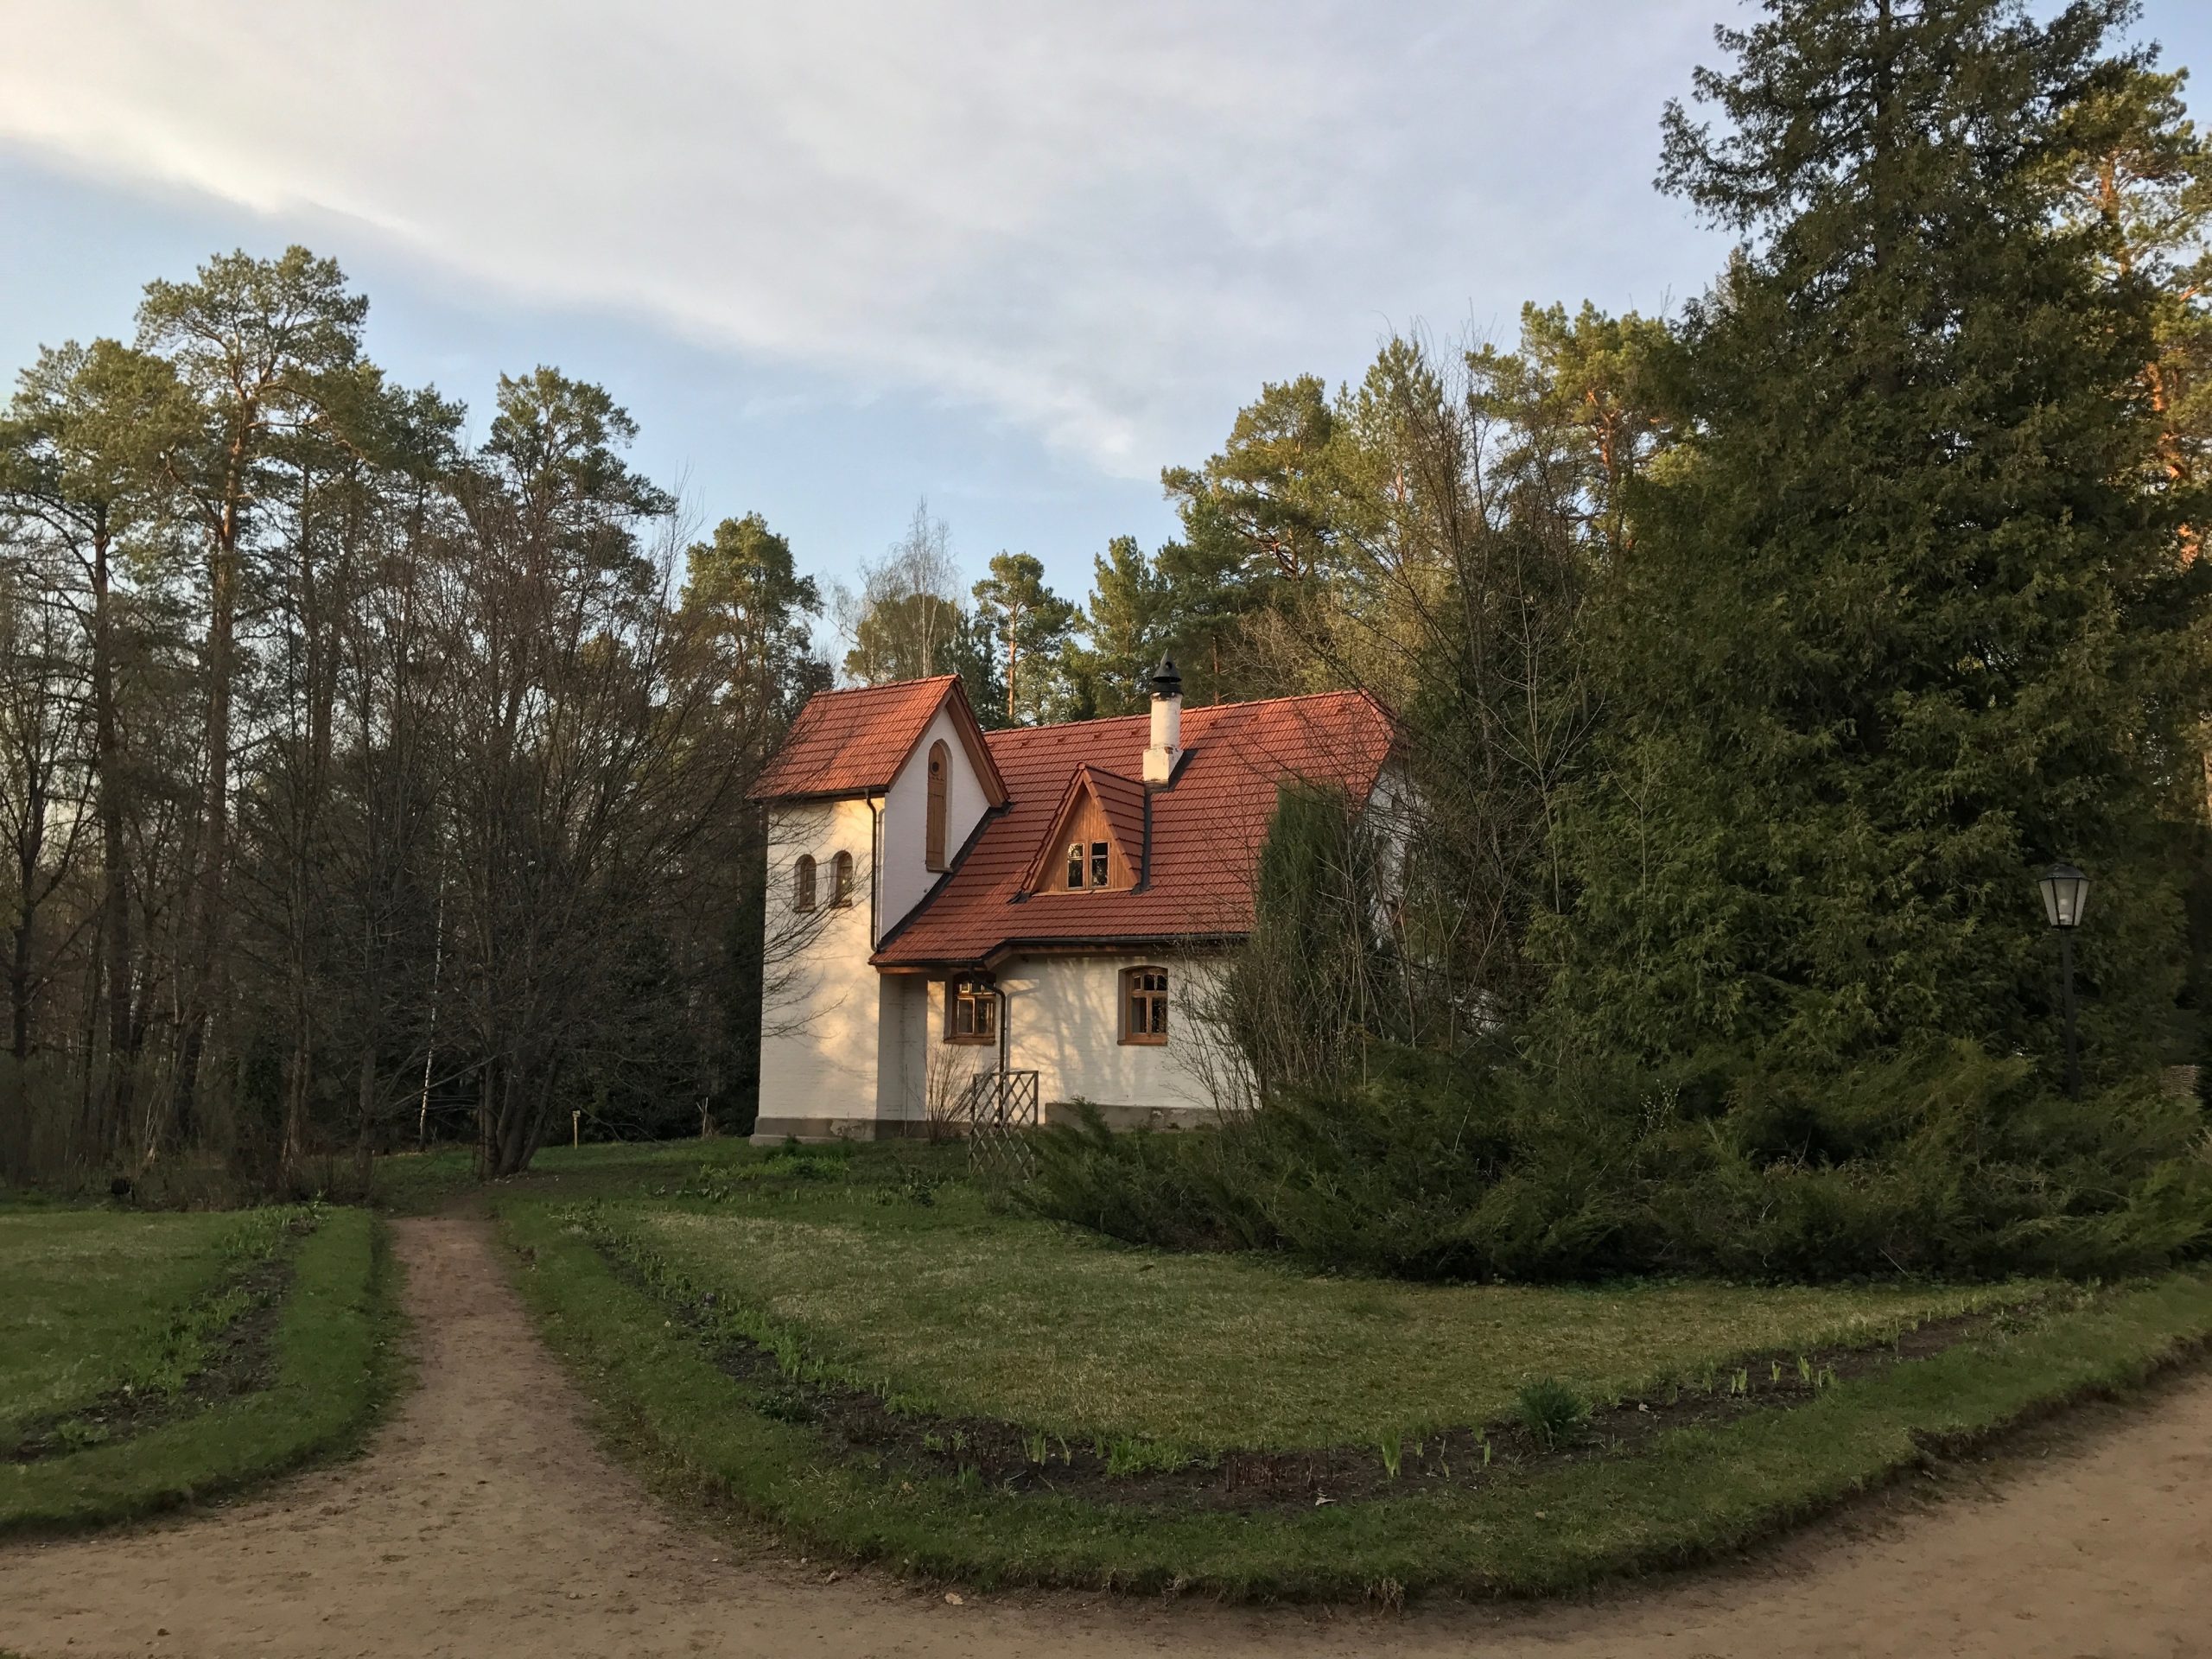 Polenovo,Estate,In,Spring,Evening